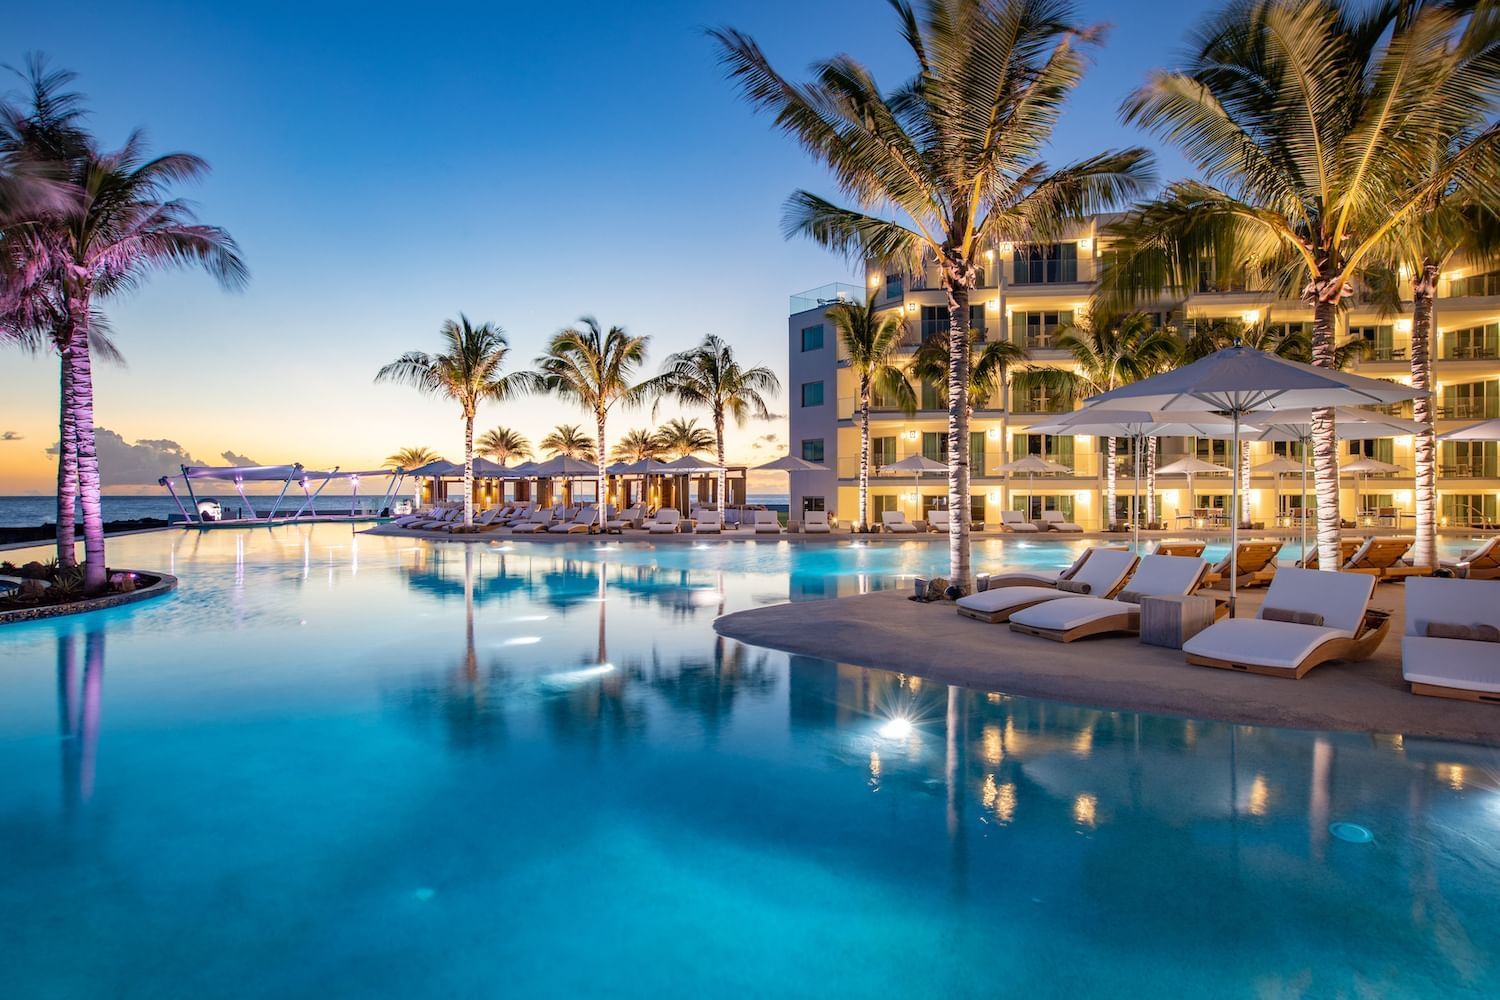 The Morgan Resort & Spa - St Maarten Luxury Resort